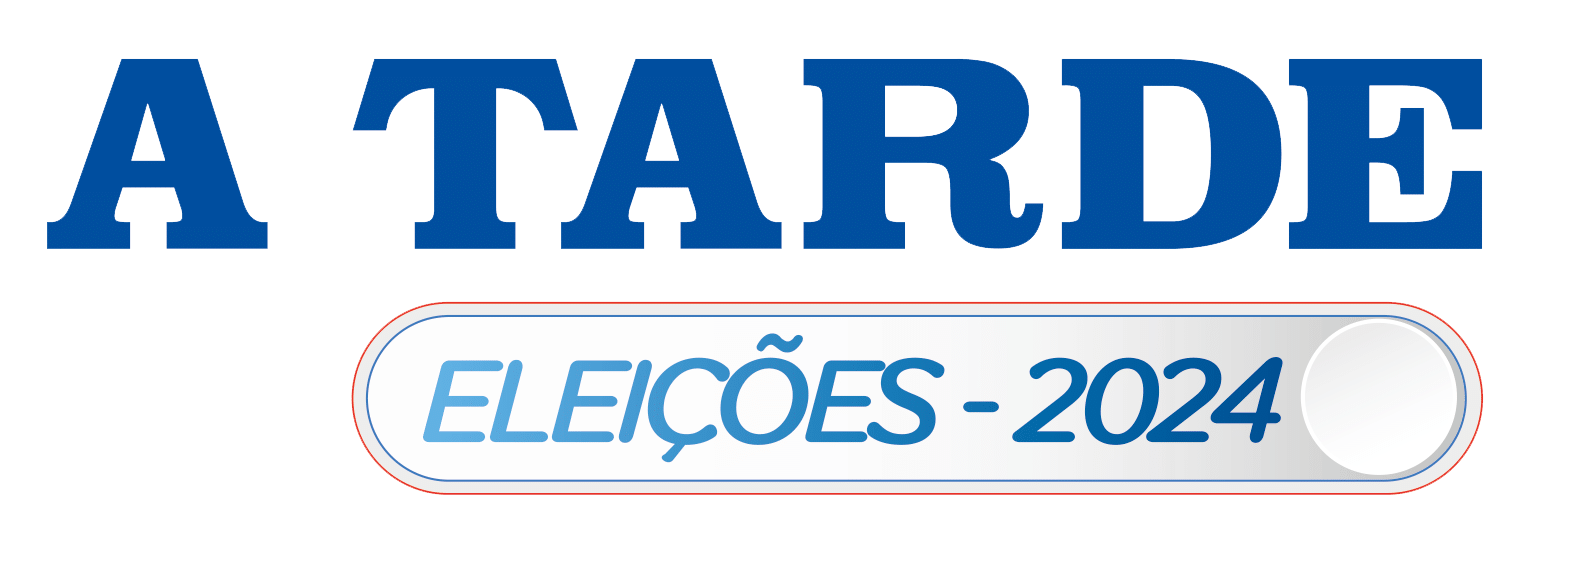 Eleições Logo